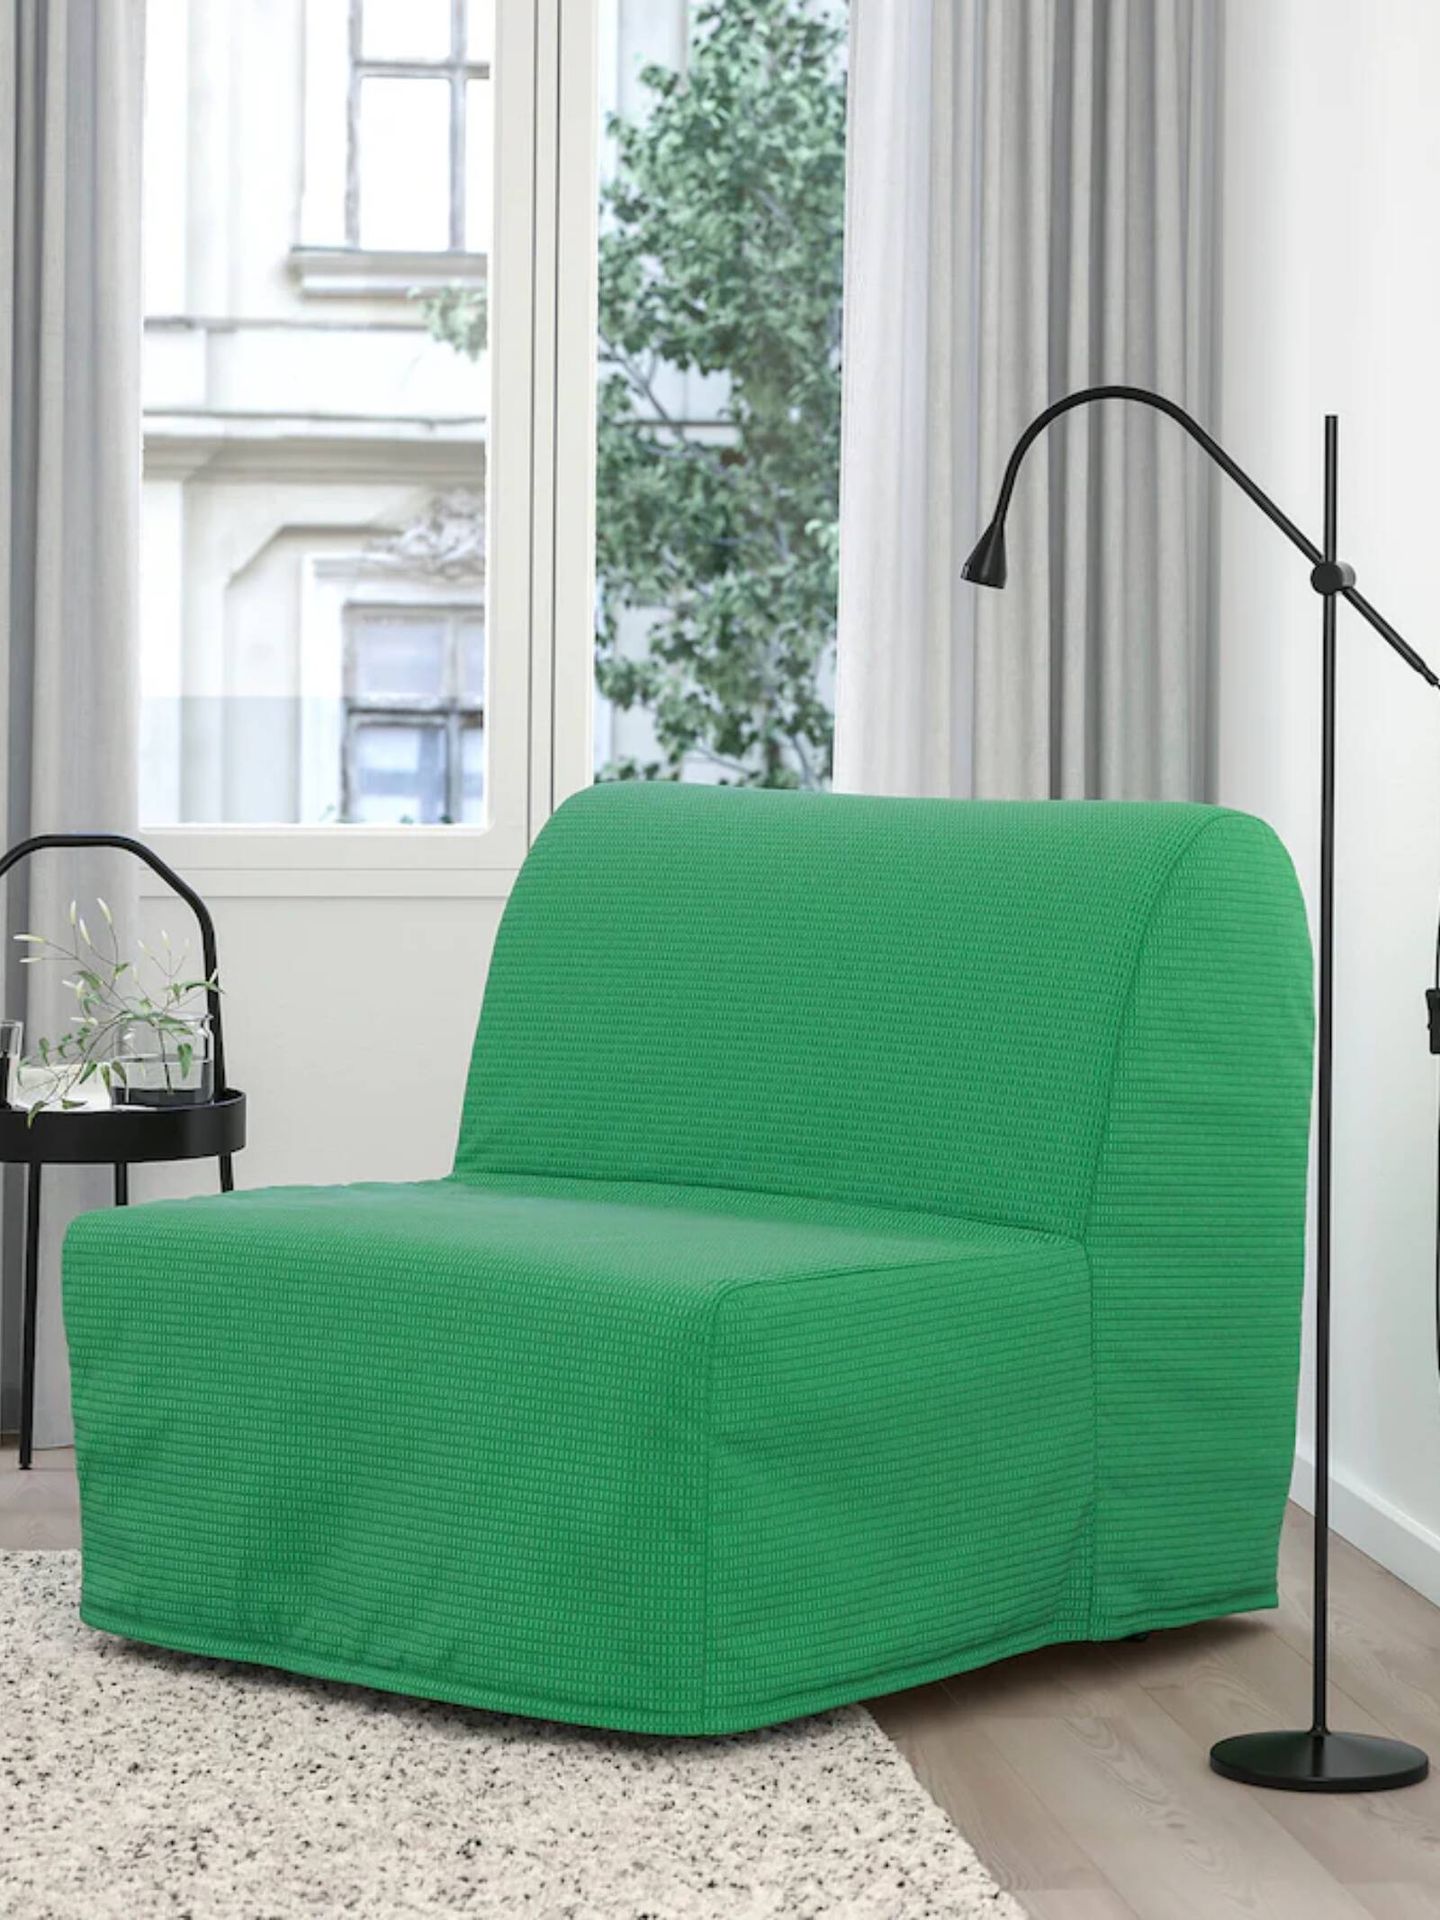 El mueble de Ikea para casas pequeñas es un sillón cama. (Cortesía)